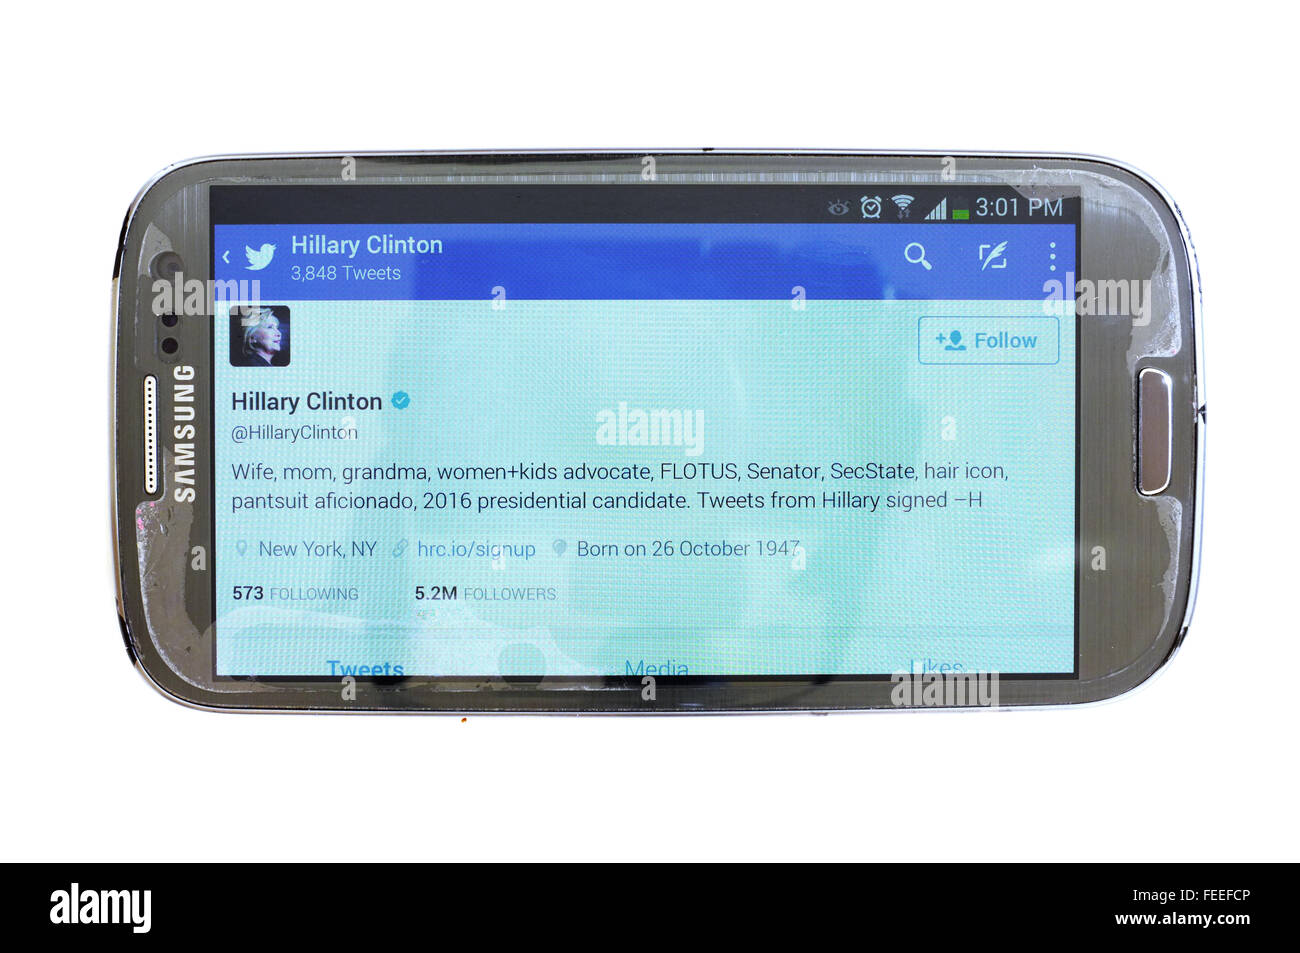 Hillary Clinton account Twitter su una schermata dello smartphone fotografati contro uno sfondo bianco. Foto Stock